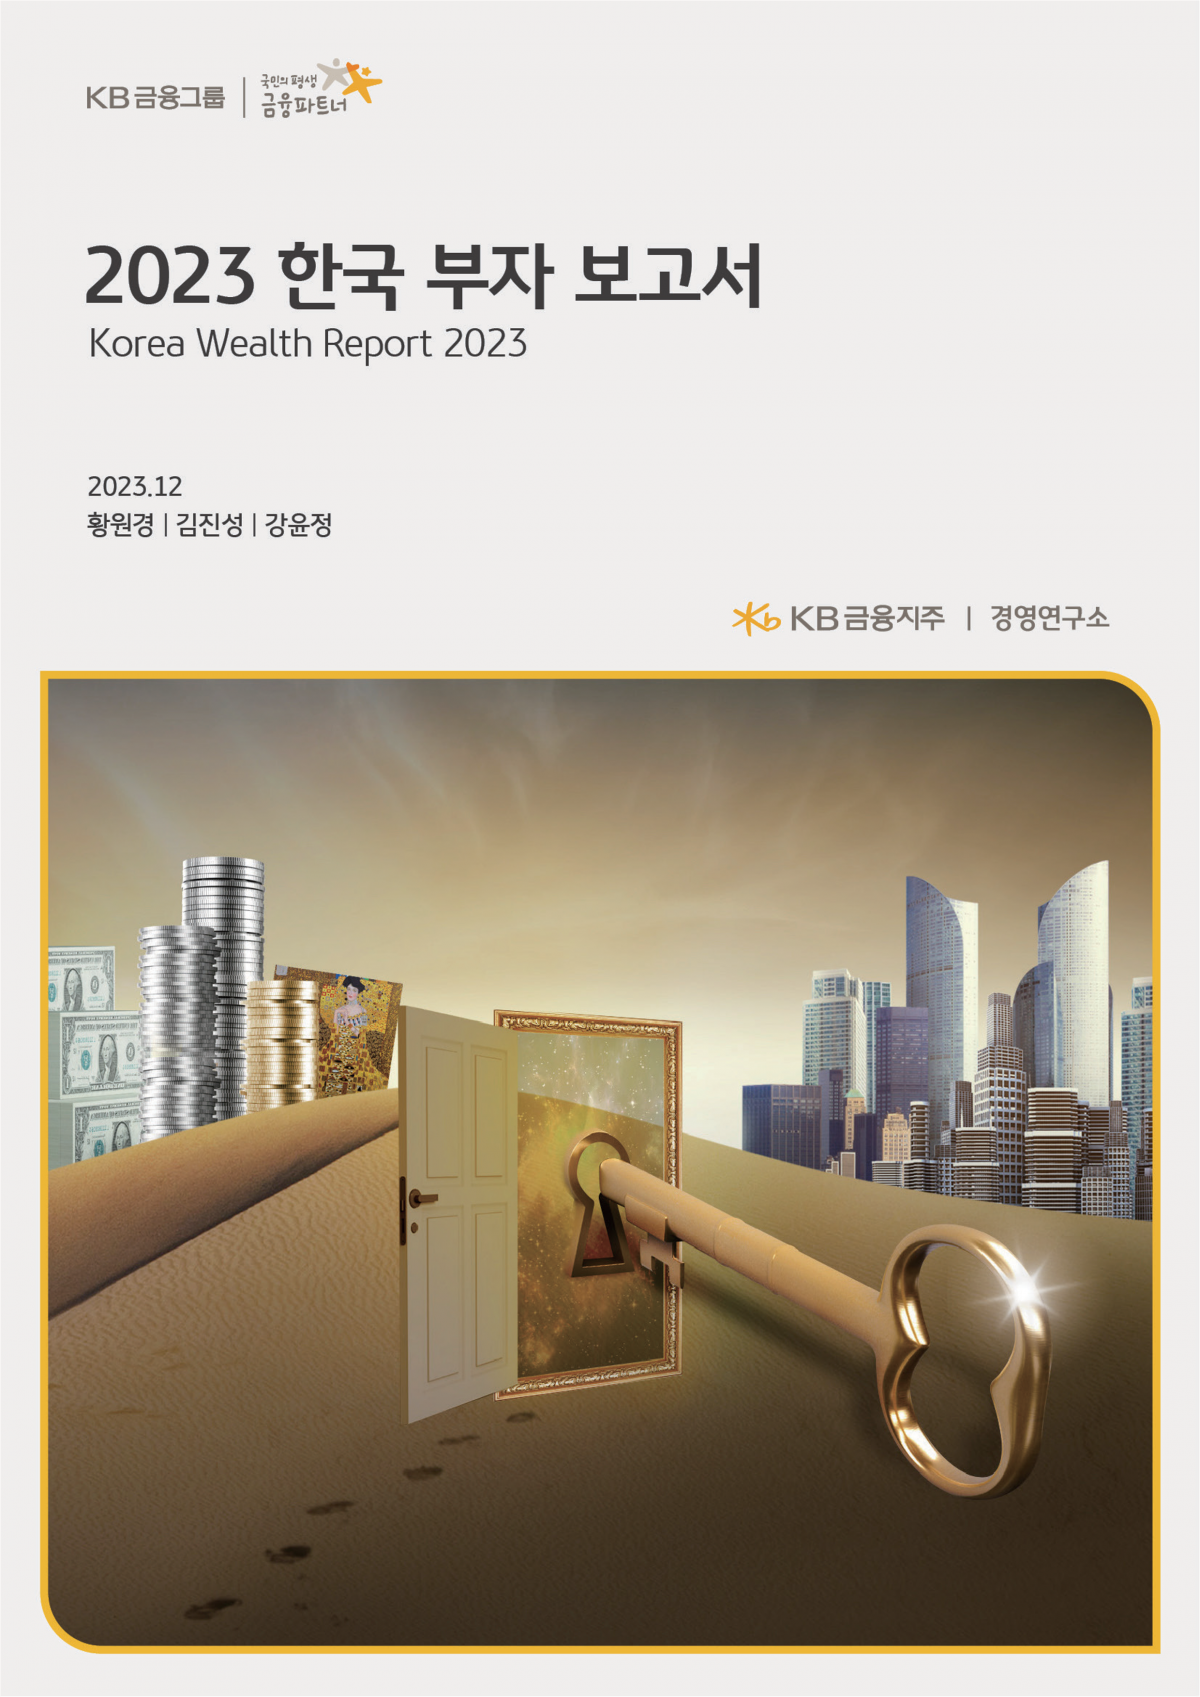 KB금융지주 경영연구소는 2011년부터 ‘한국 부자 보고서’를 발행하고 있다.  사진은 지난해 발행한 보고서의 표지. KB금융지주 경영연구소 제공